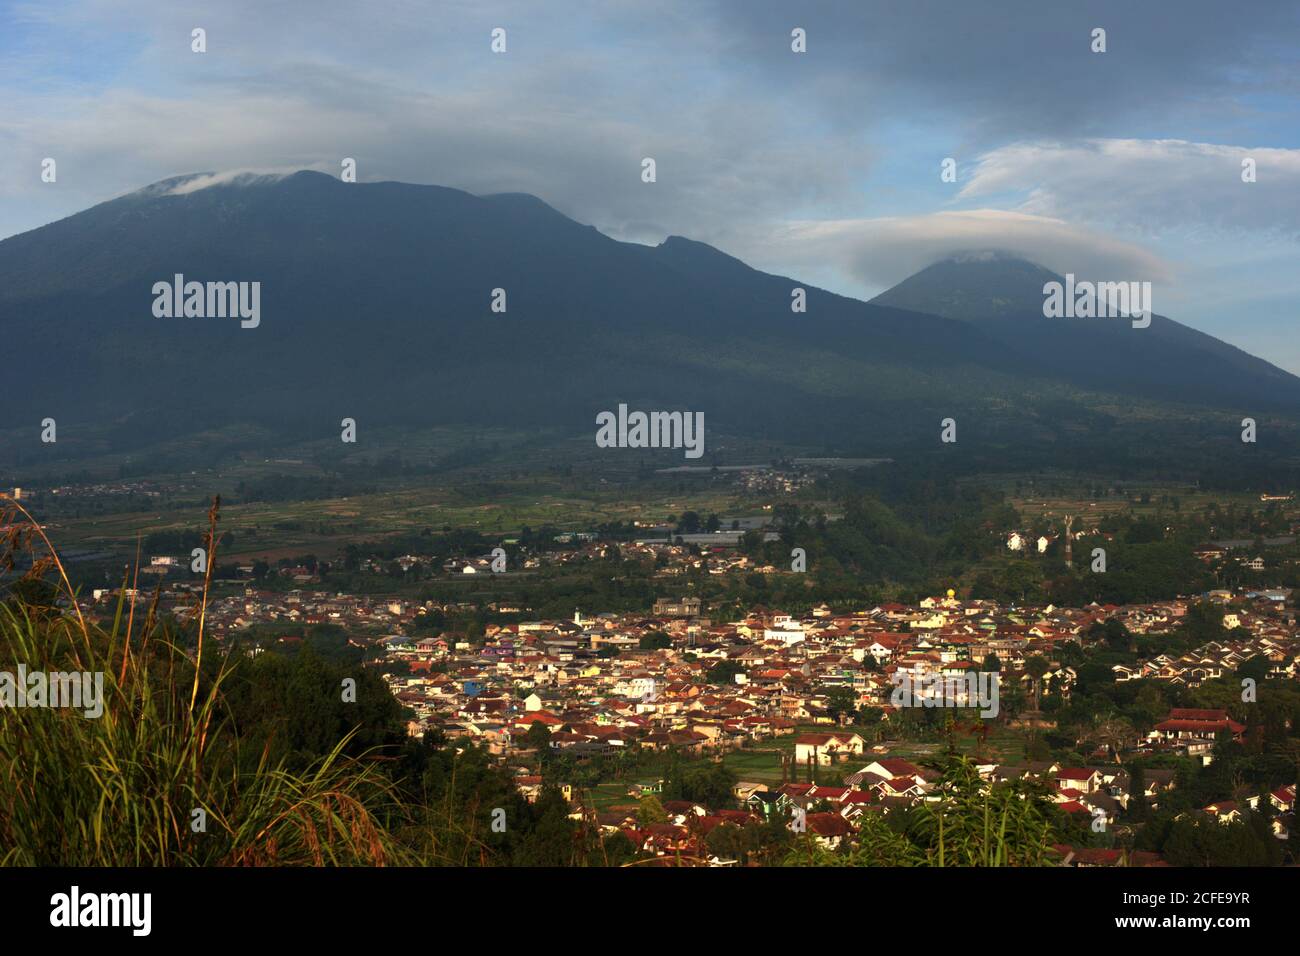 Der kuppelförmige Berg Gede (links) und der konische Berg Pangrango bilden den Mount-Gede Pangrango Nationalpark in der Provinz West Java, Indonesien. Stockfoto